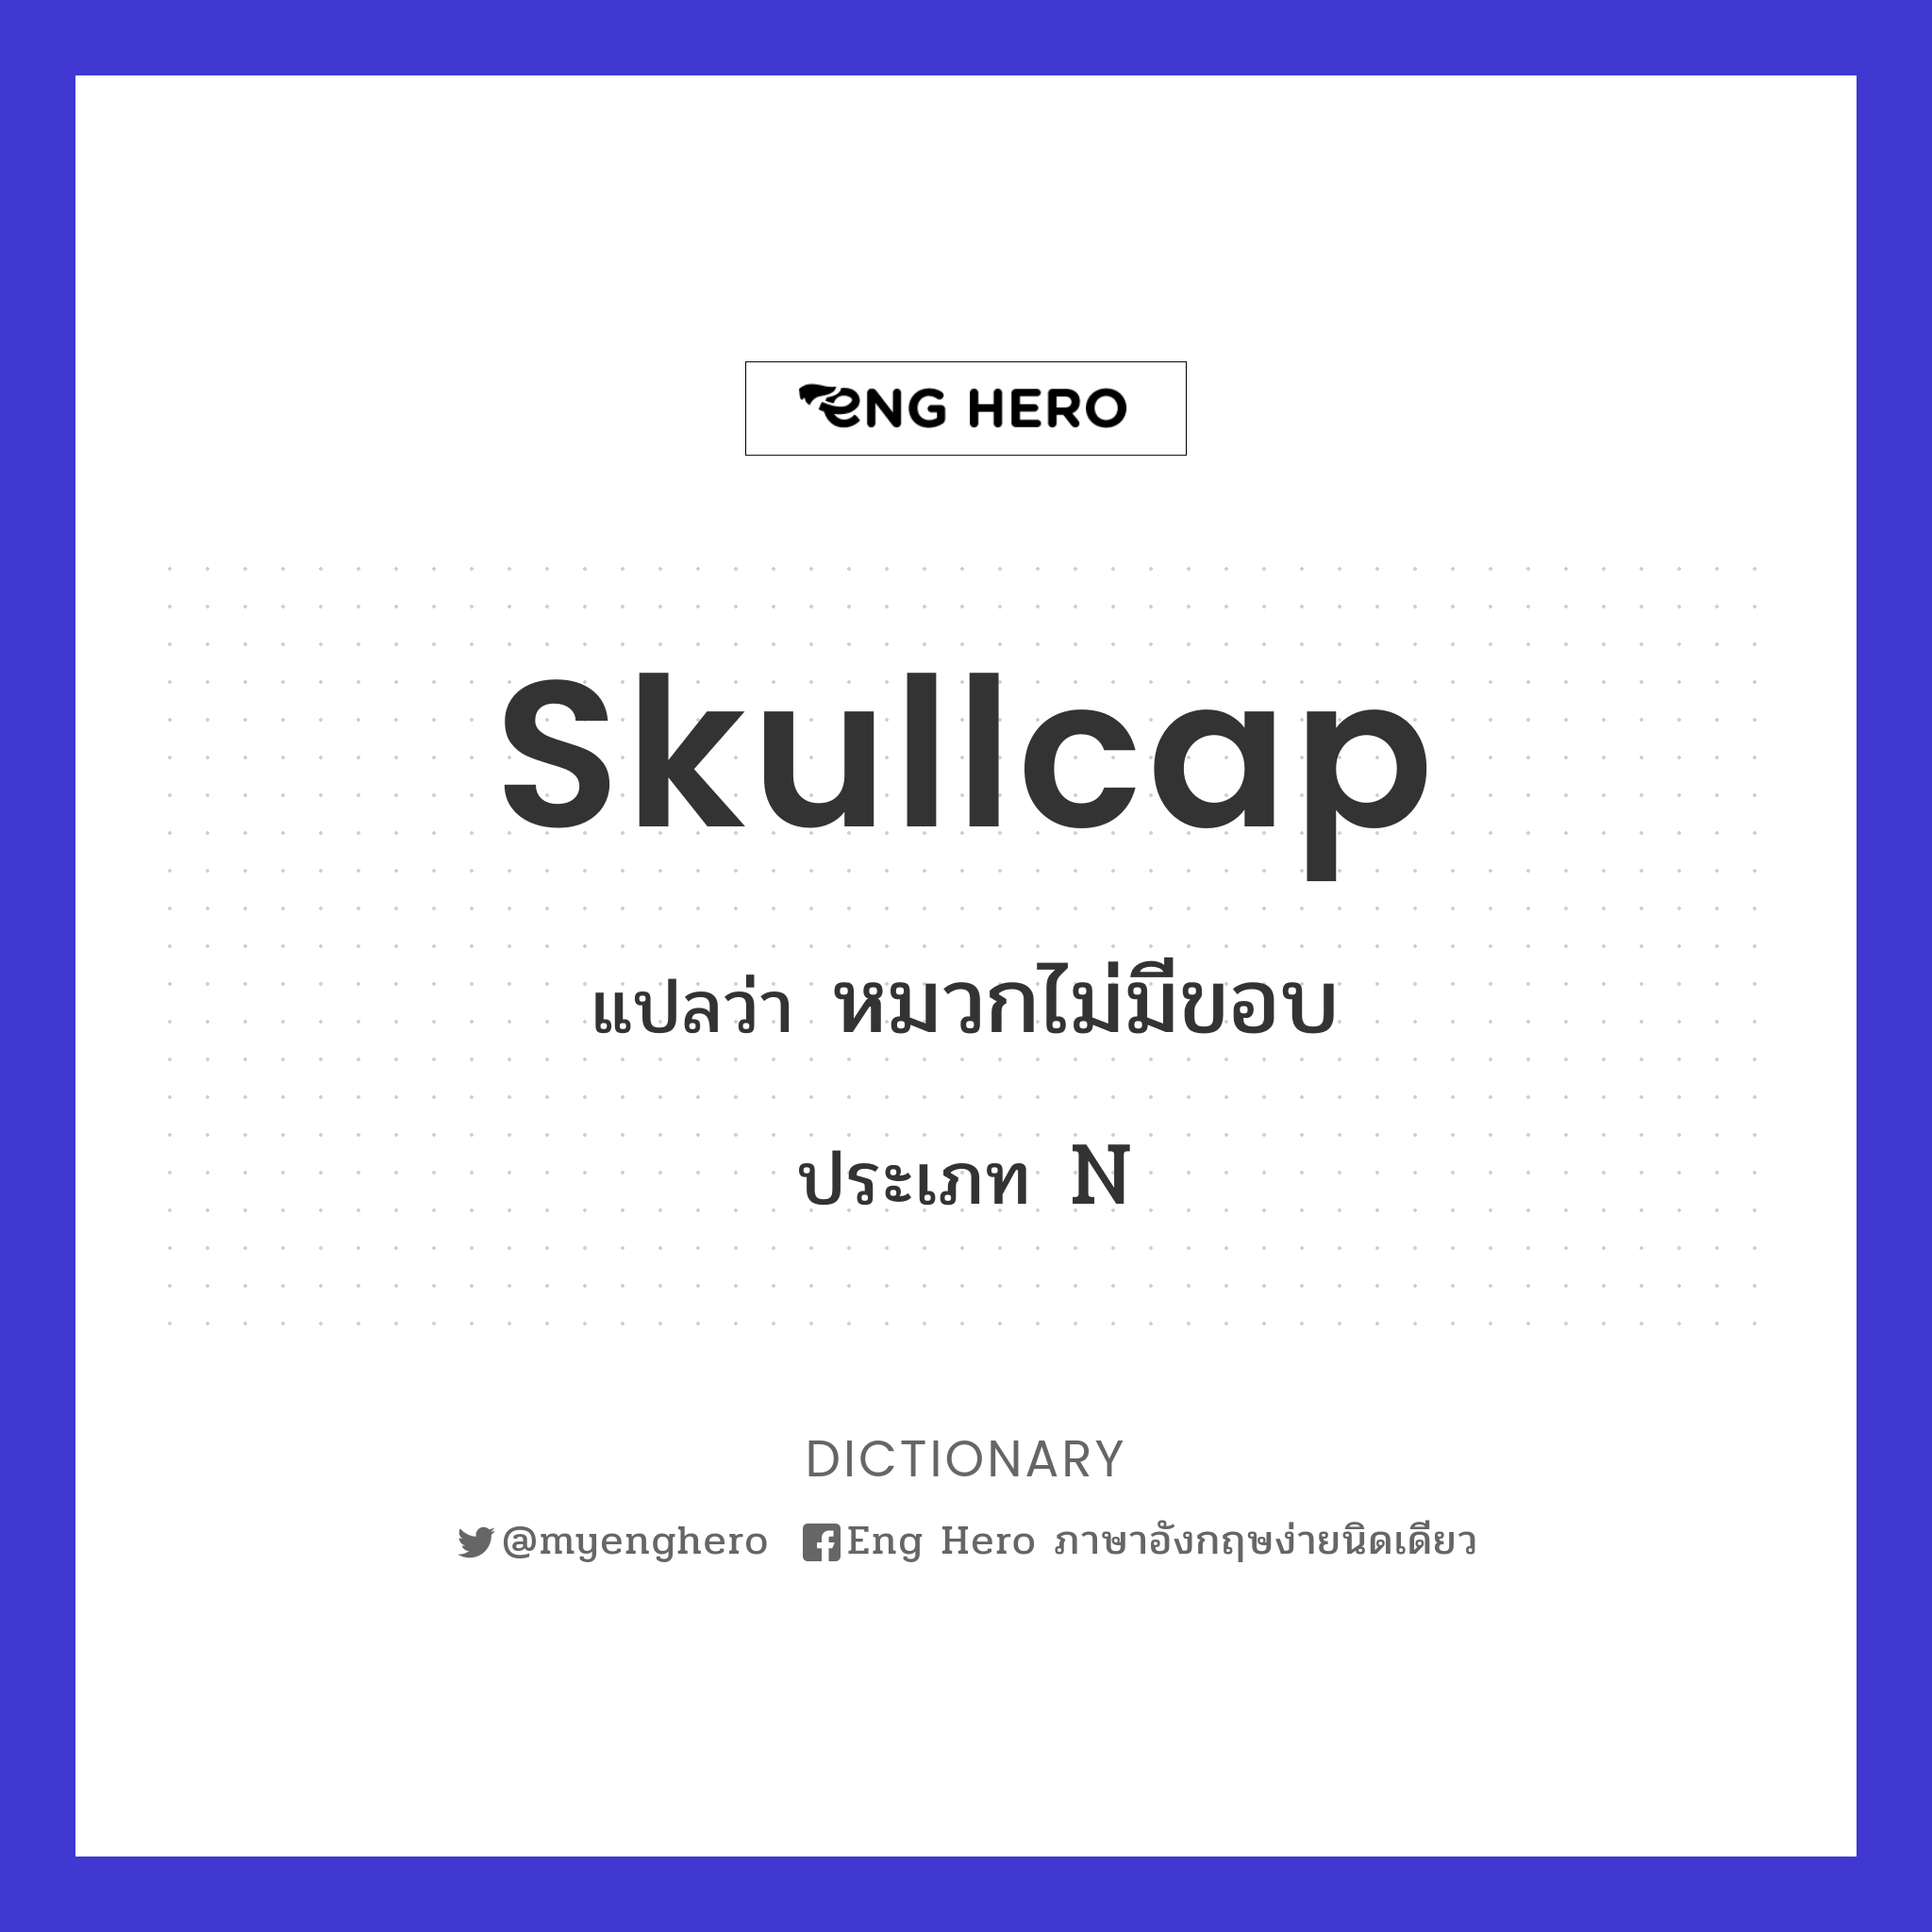 skullcap